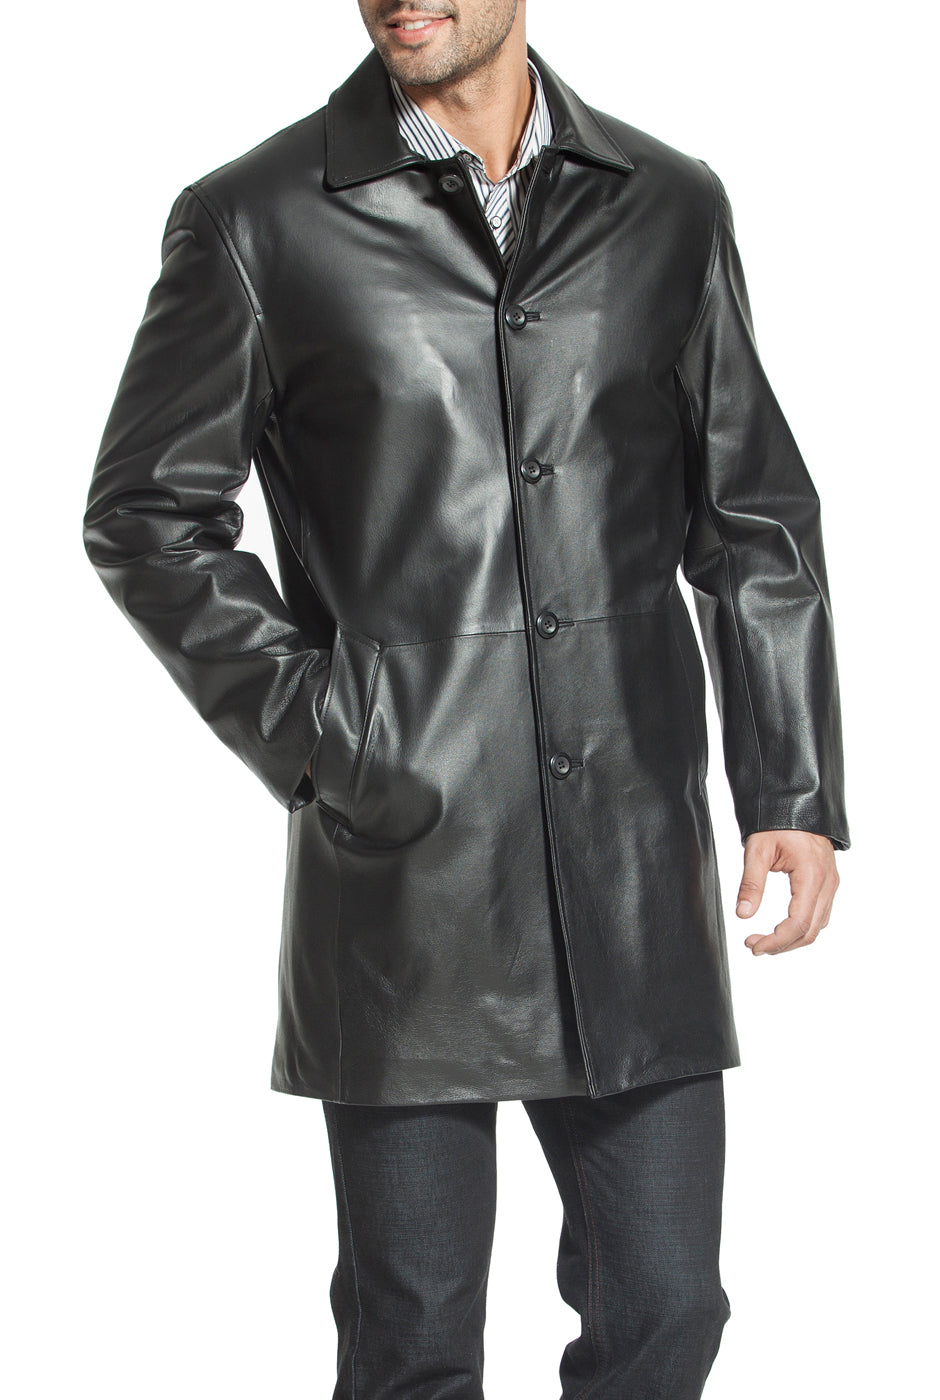 bgsd mens peter three quarter leather coat